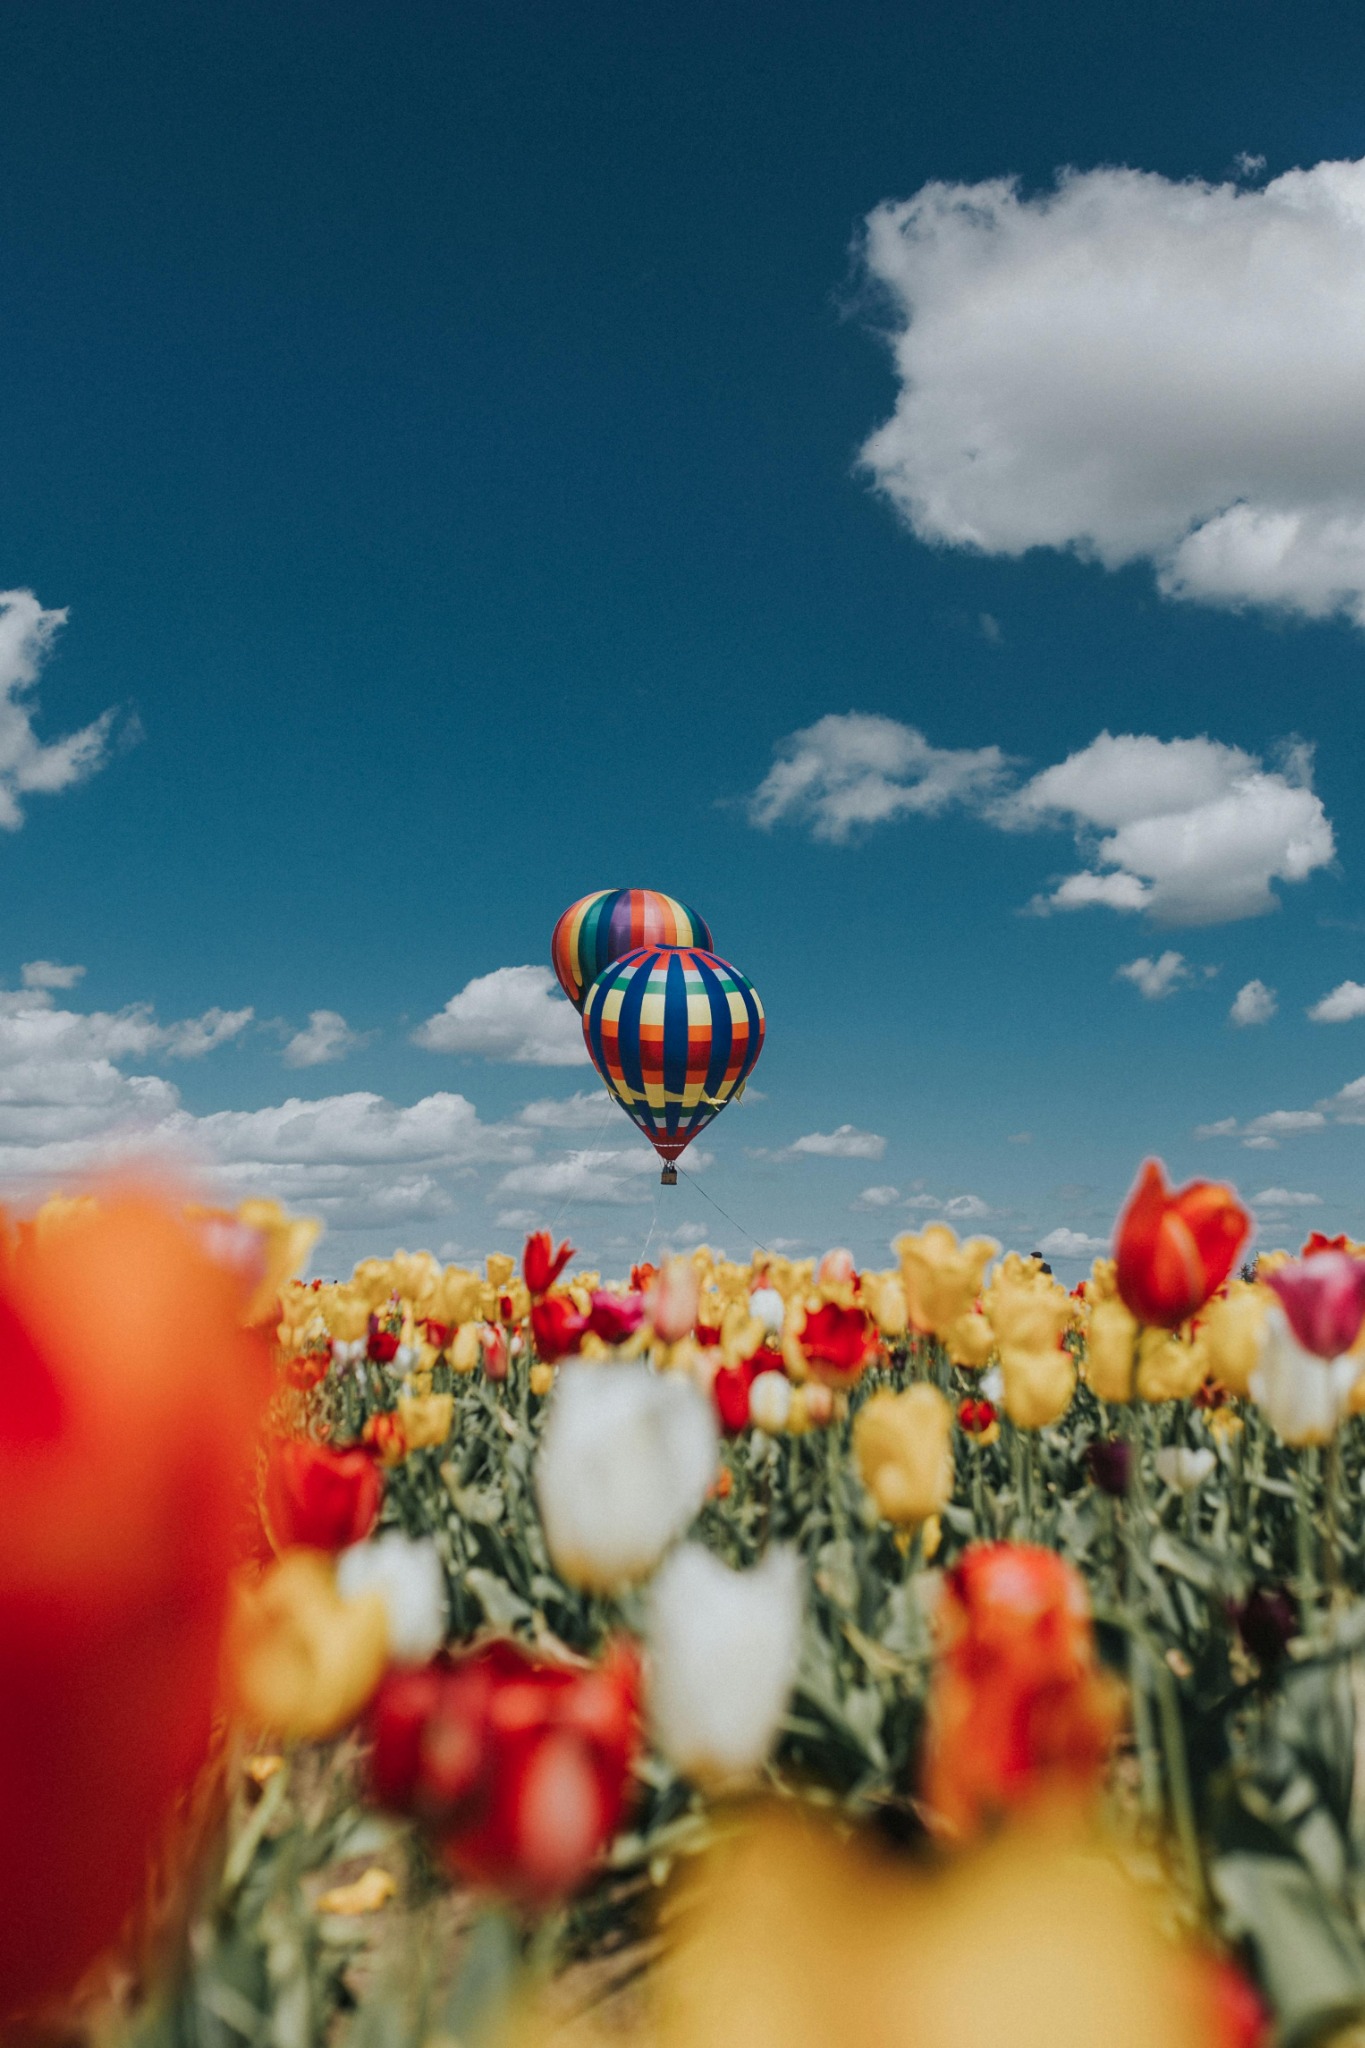 Spring hot air balloon tulip field